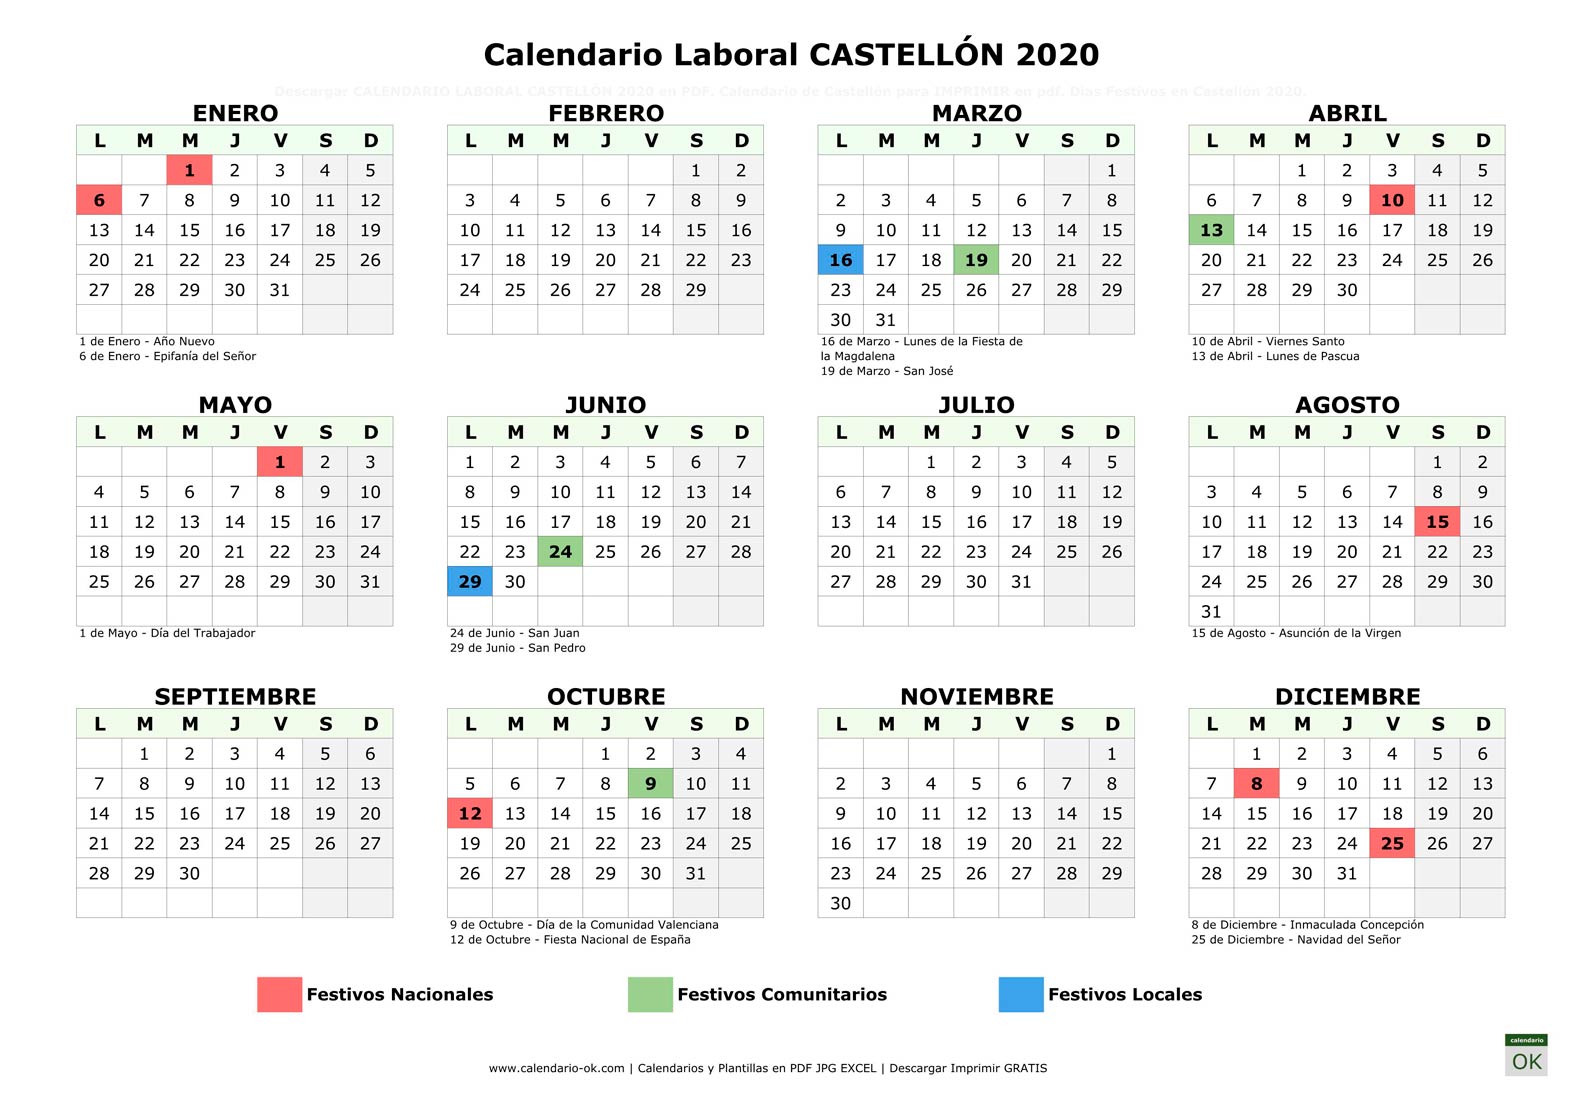 Calendario Laboral CASTELLÓN 2020 horizontal